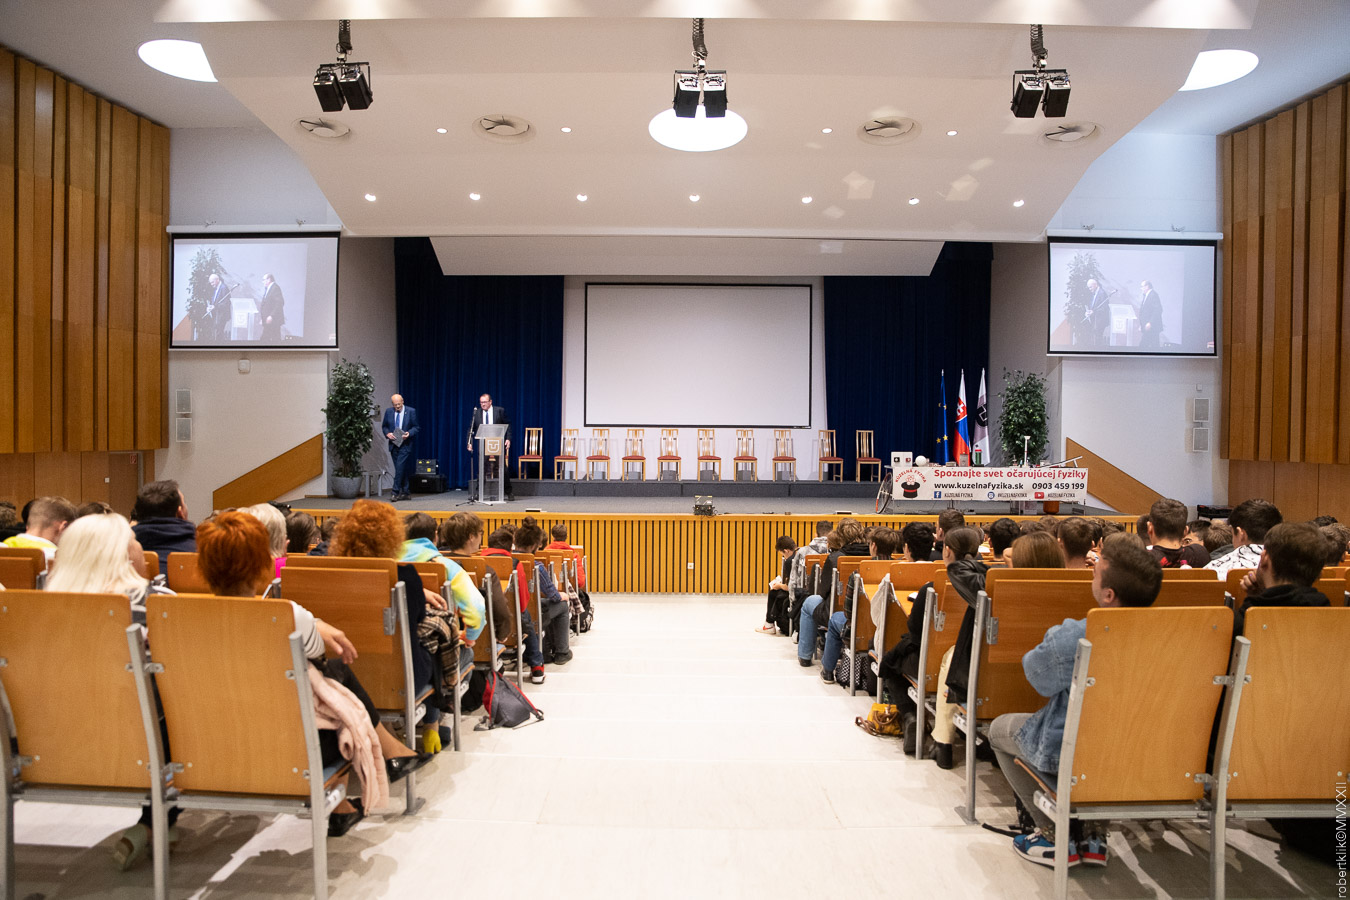 Deň otvorených dverí na Technickej univerzite v Košiciach aj v tomto roku 12. októbra prilákal viac ako tisíc stredoškolákov.